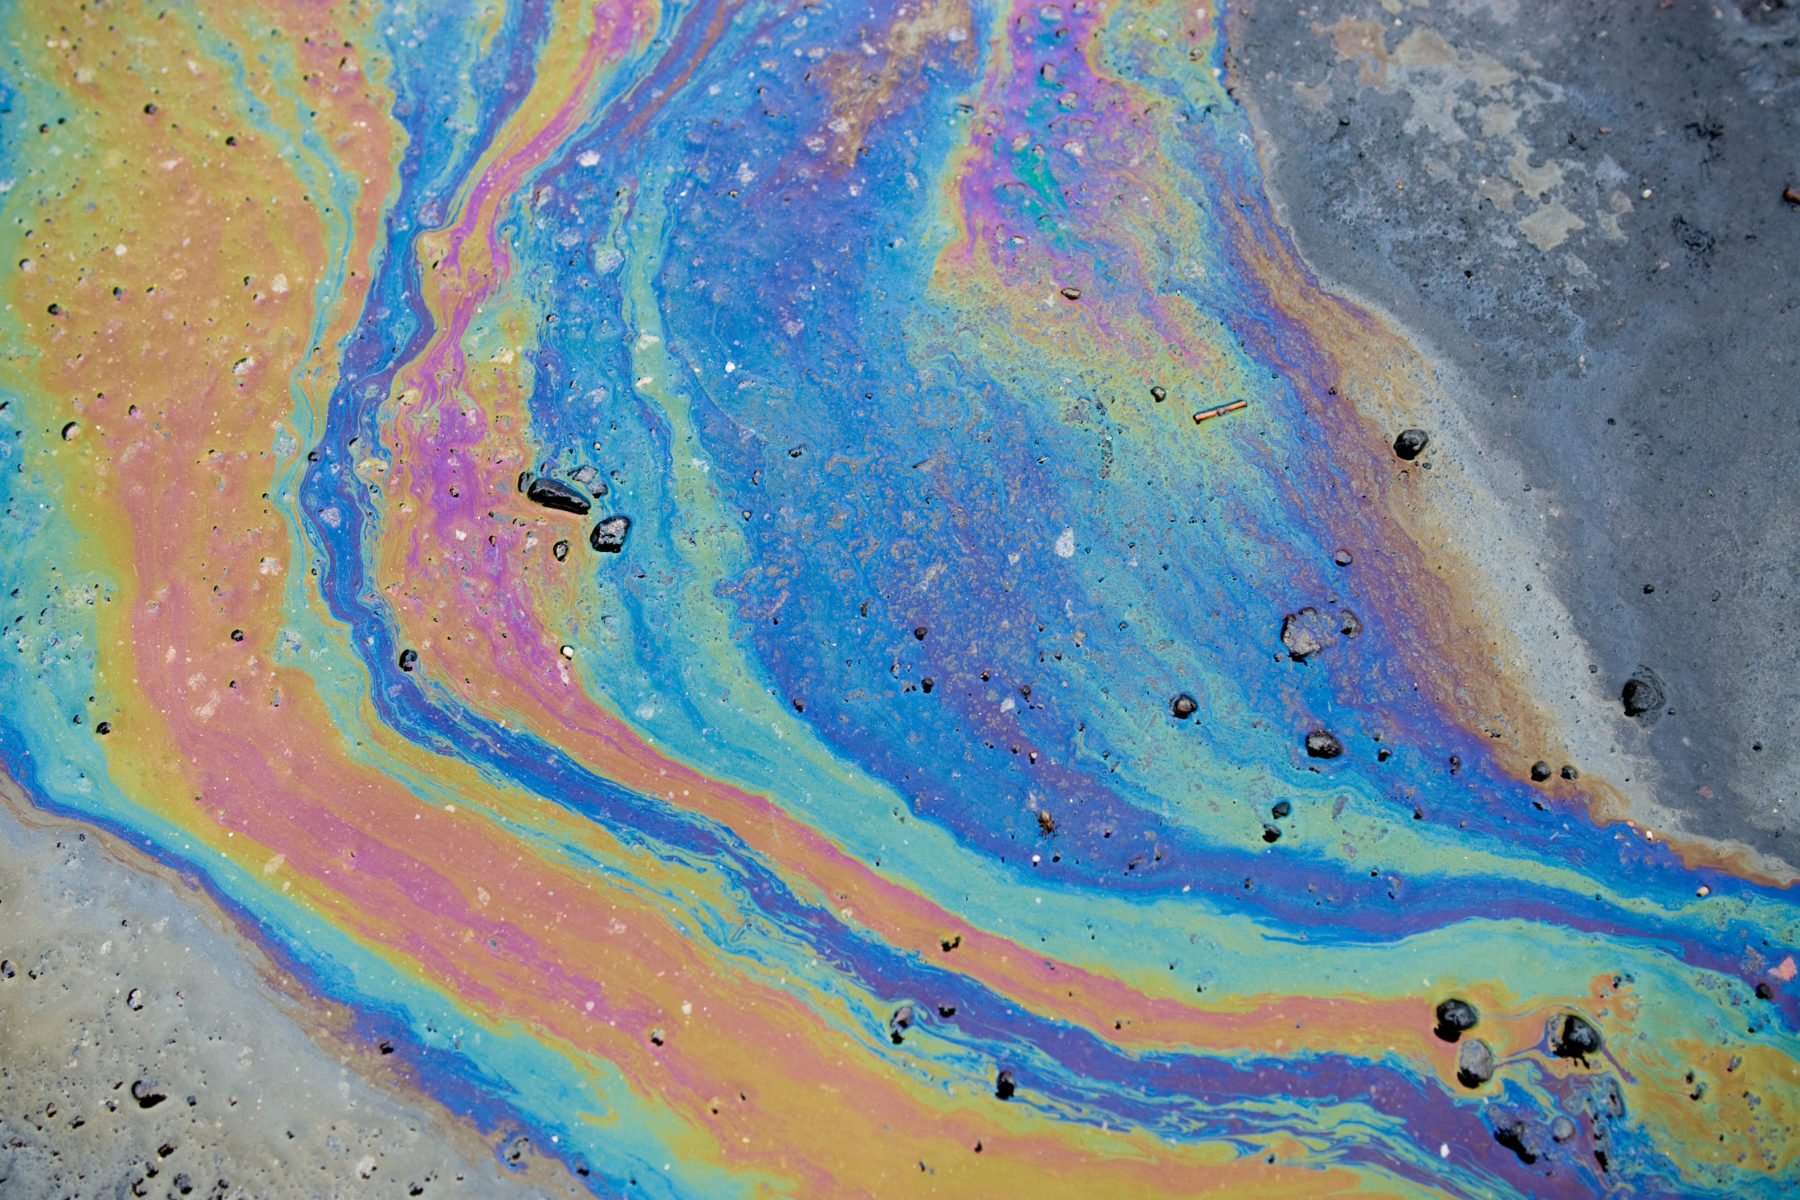 Oil in water sidewalk